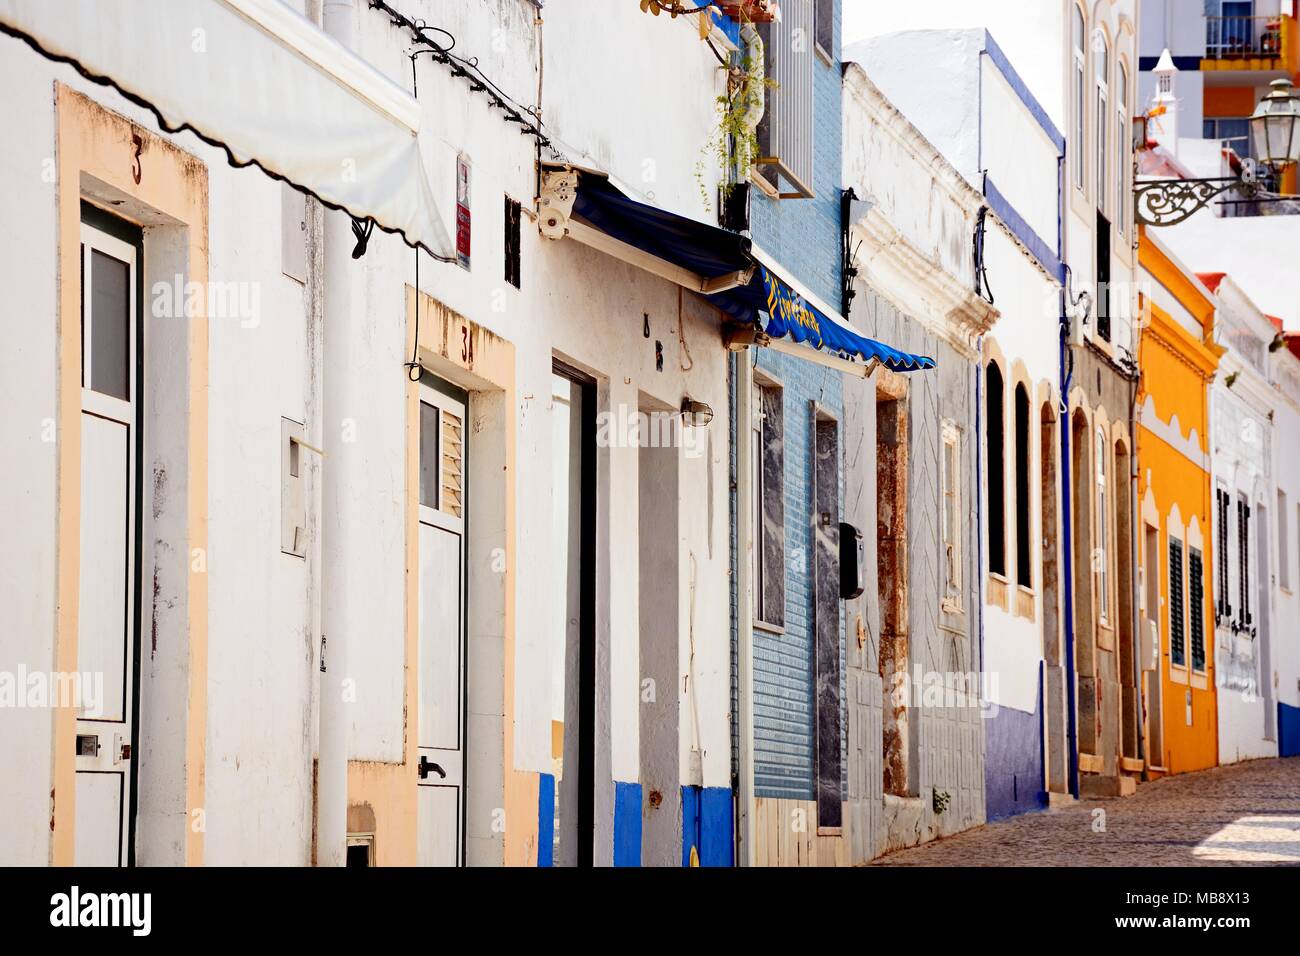 Les bâtiments traditionnels portugais le long d'une rue de la vieille ville, Lagos, Algarve, Portugal, Europe. Banque D'Images